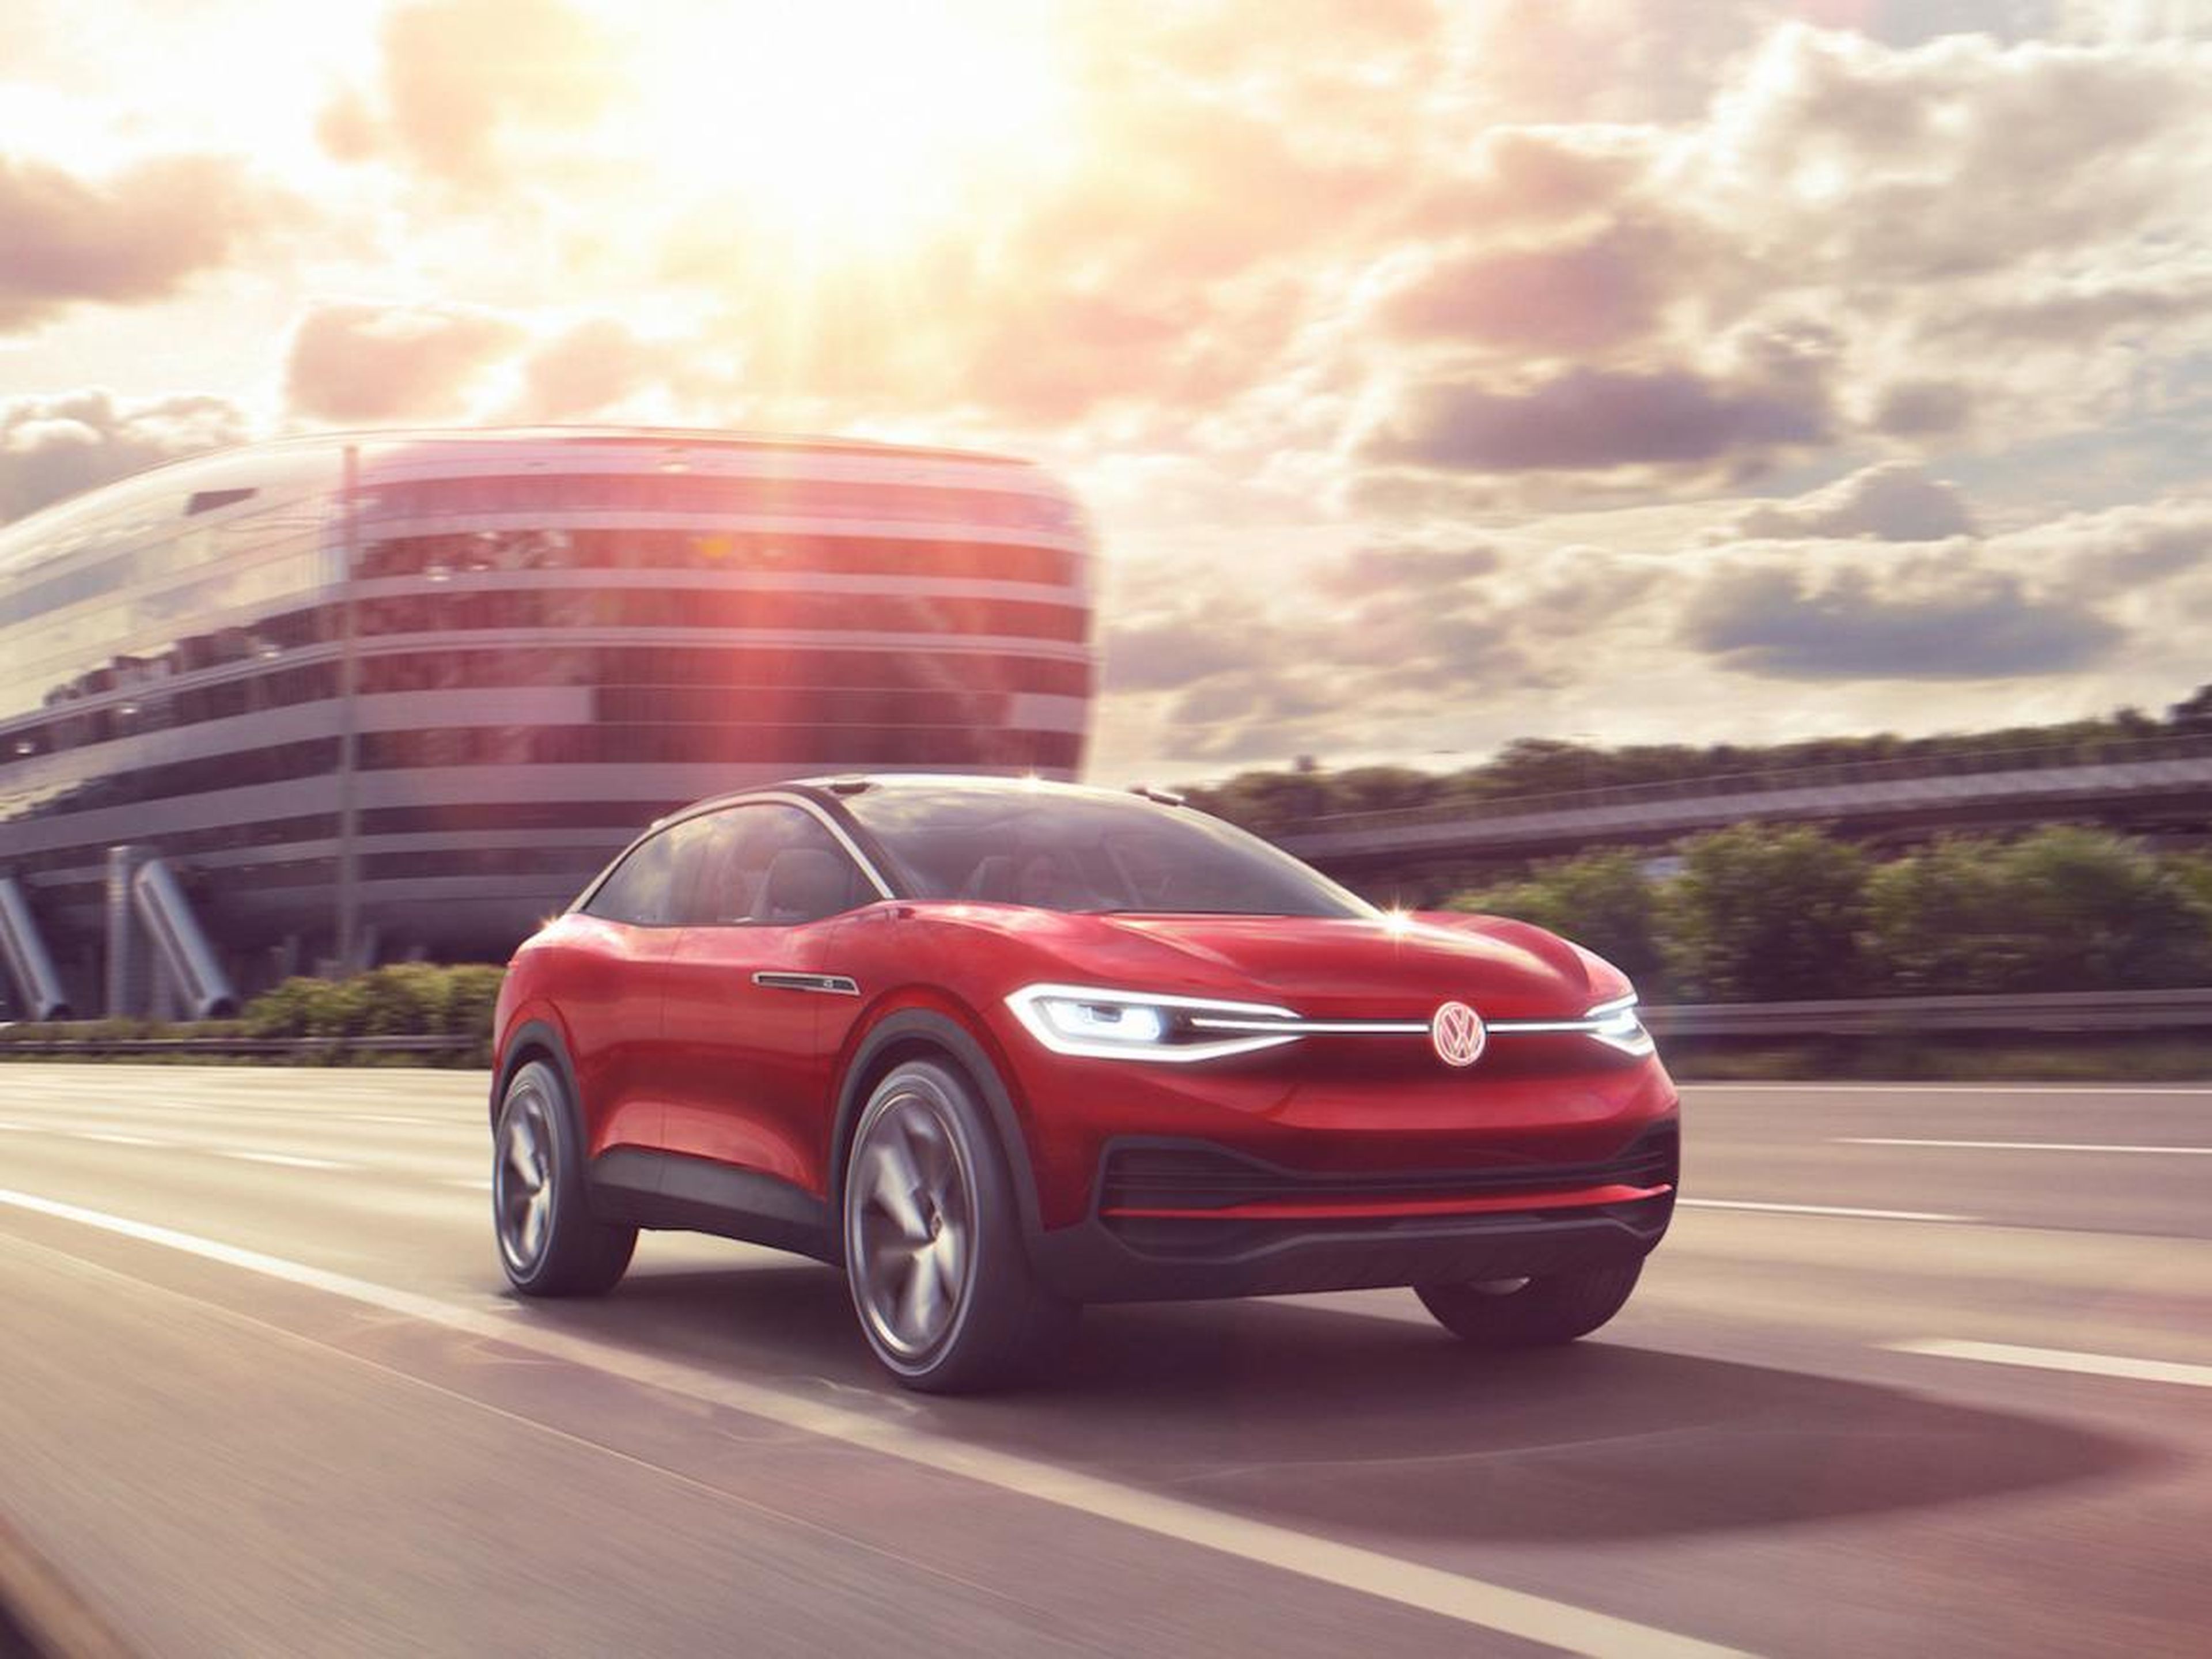 Volkswagen's I.D. Crozz will arrive in 2020.